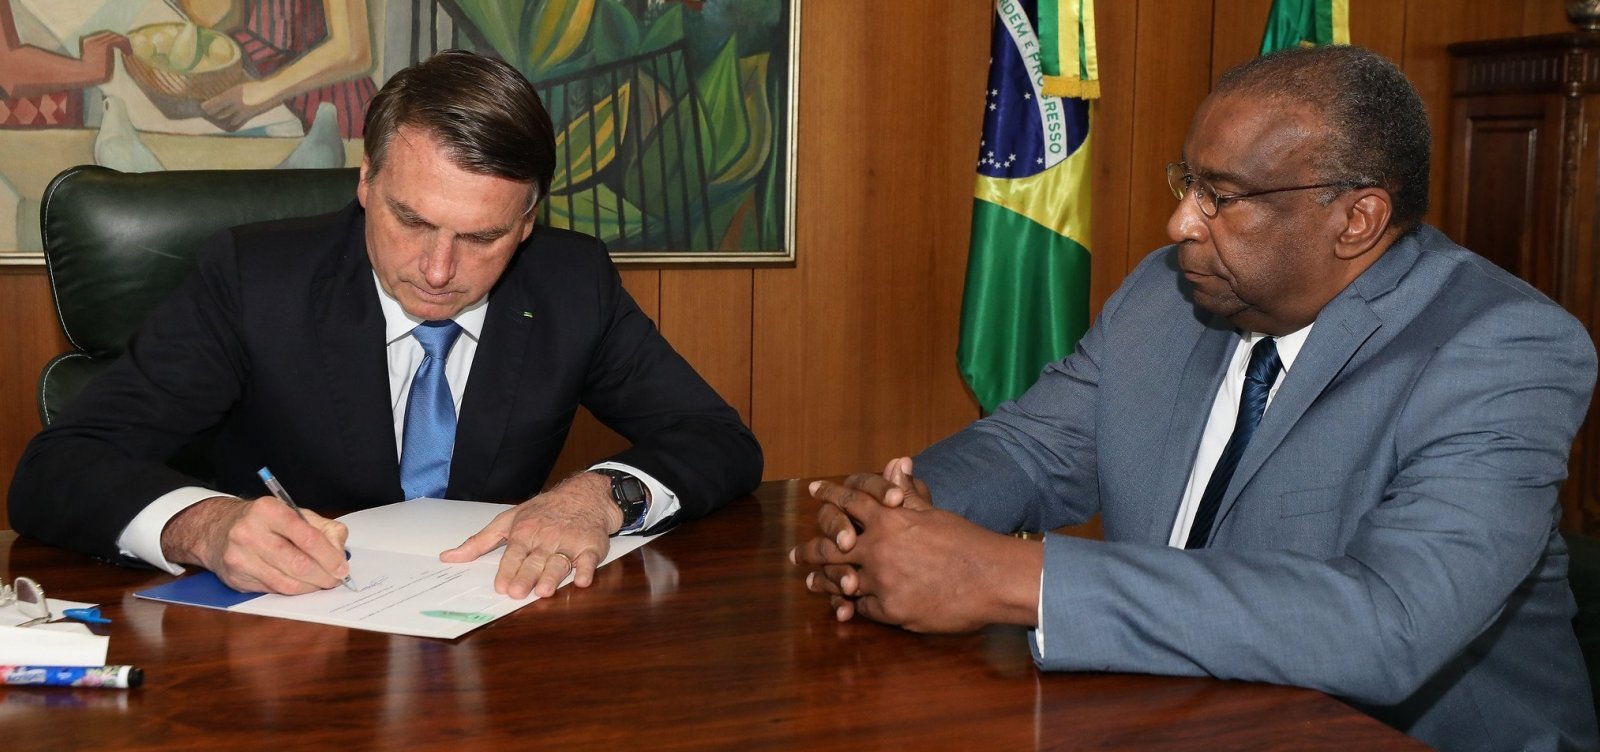 Foto do presidente Bolsonaro e do ex-ministro Decotelli sentados à mesa. Bolsonaro está à esquerda e Decotelli à direita. Bolsonaro está assinando a nomeação do ex-ministro na sala presidencial